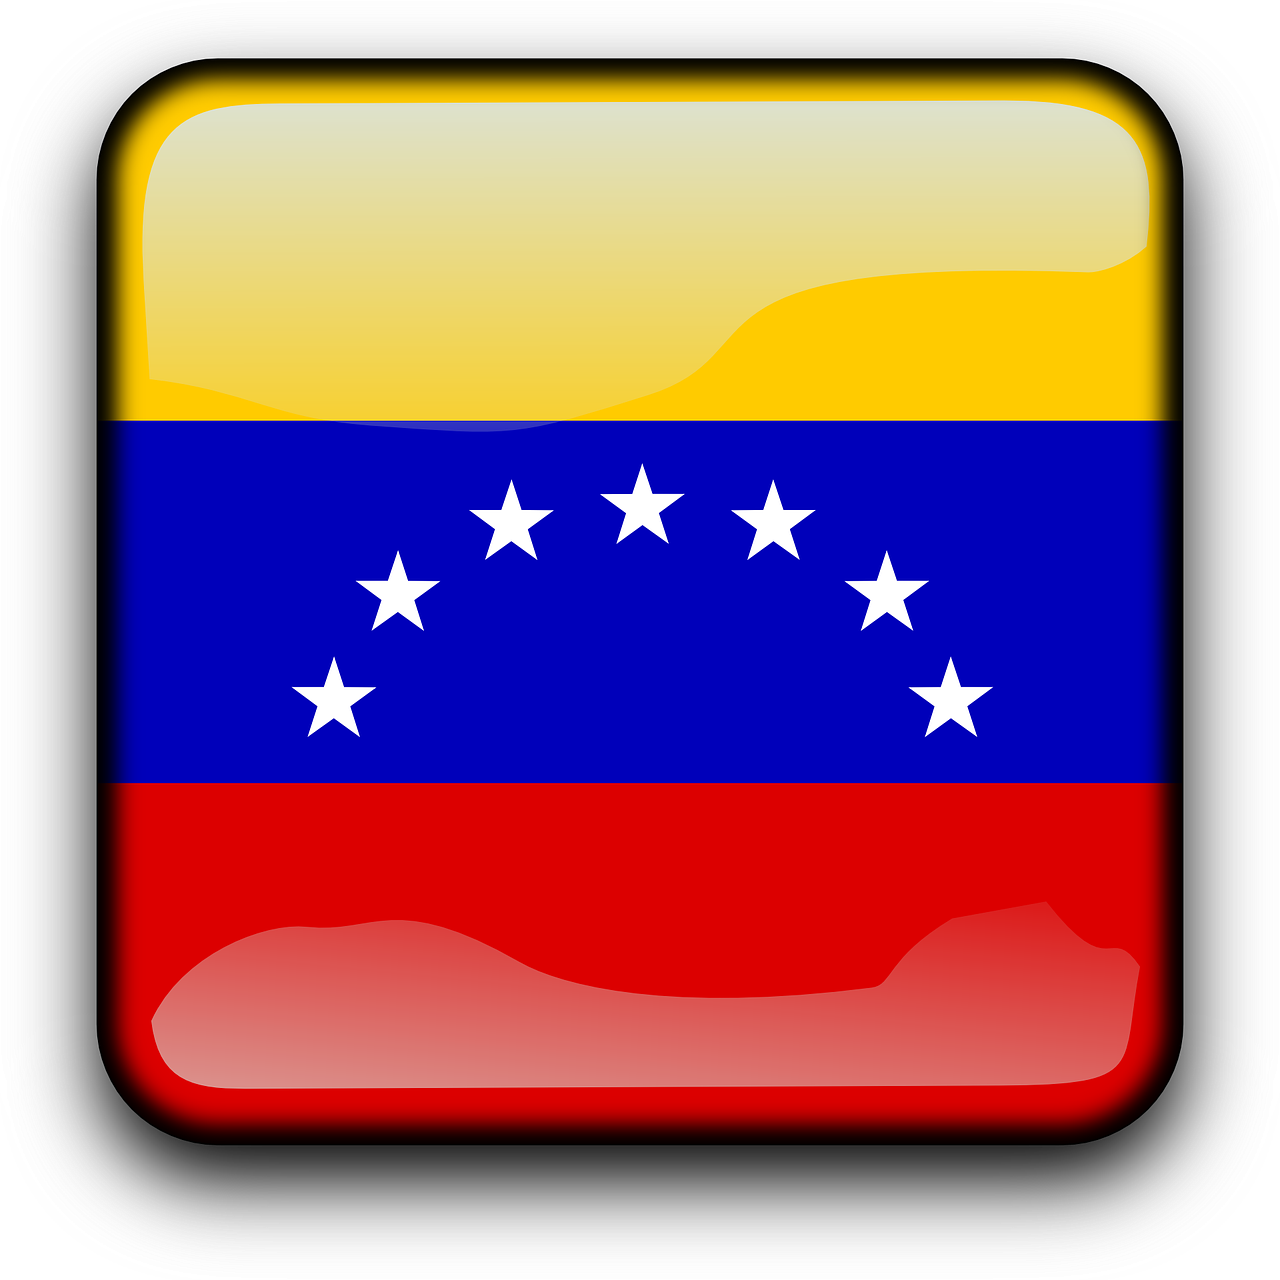 venezuela-g23fe78edf_1280